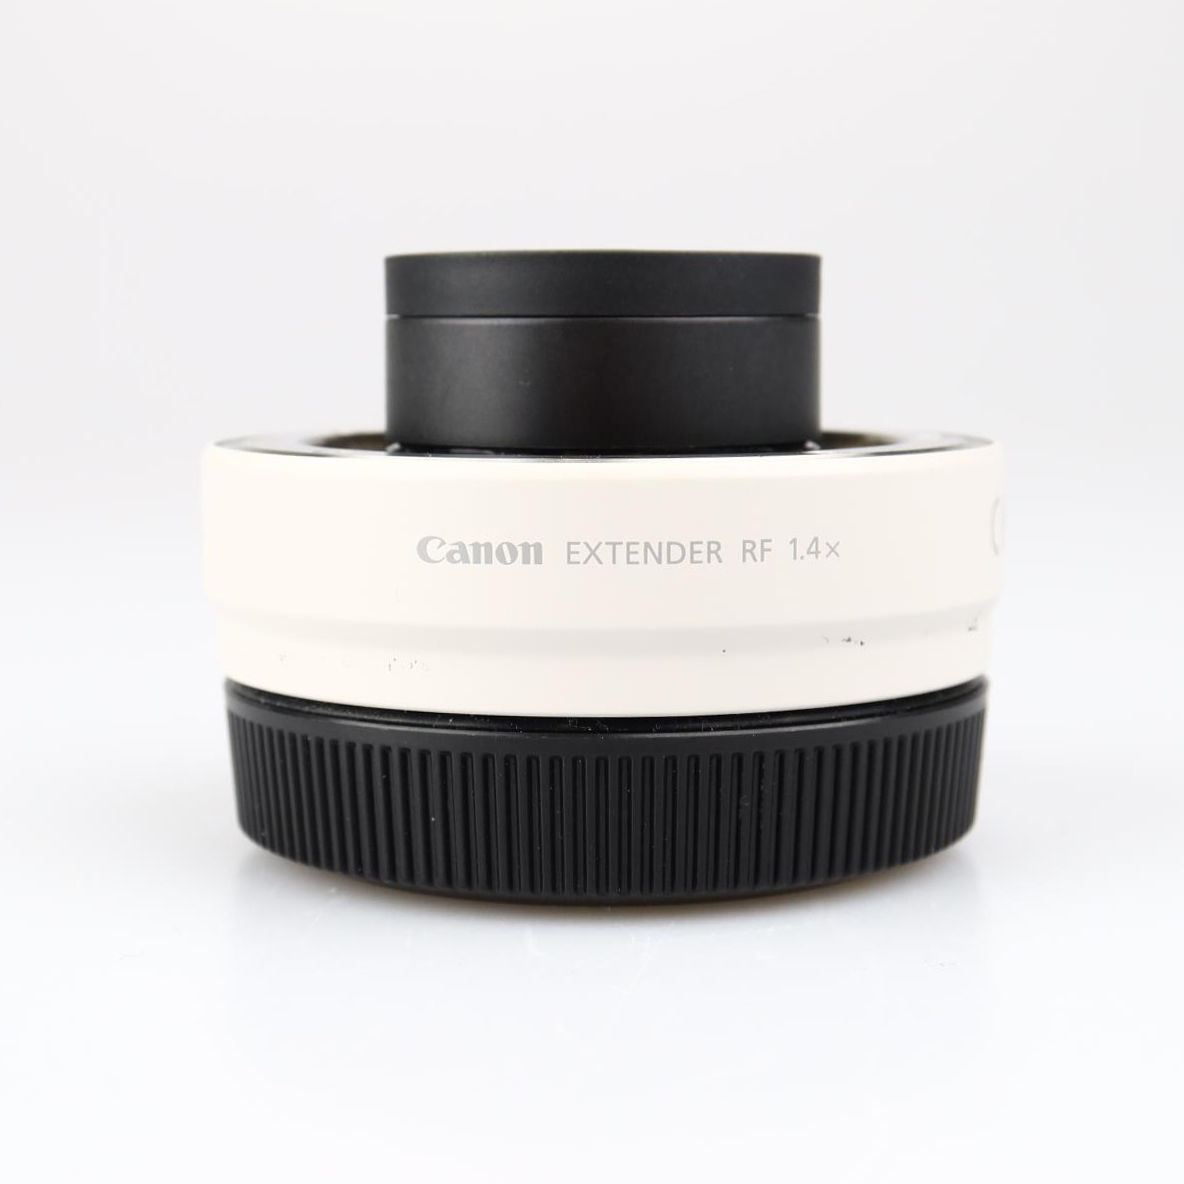 Canon Extender RF 1.4x (käytetty)